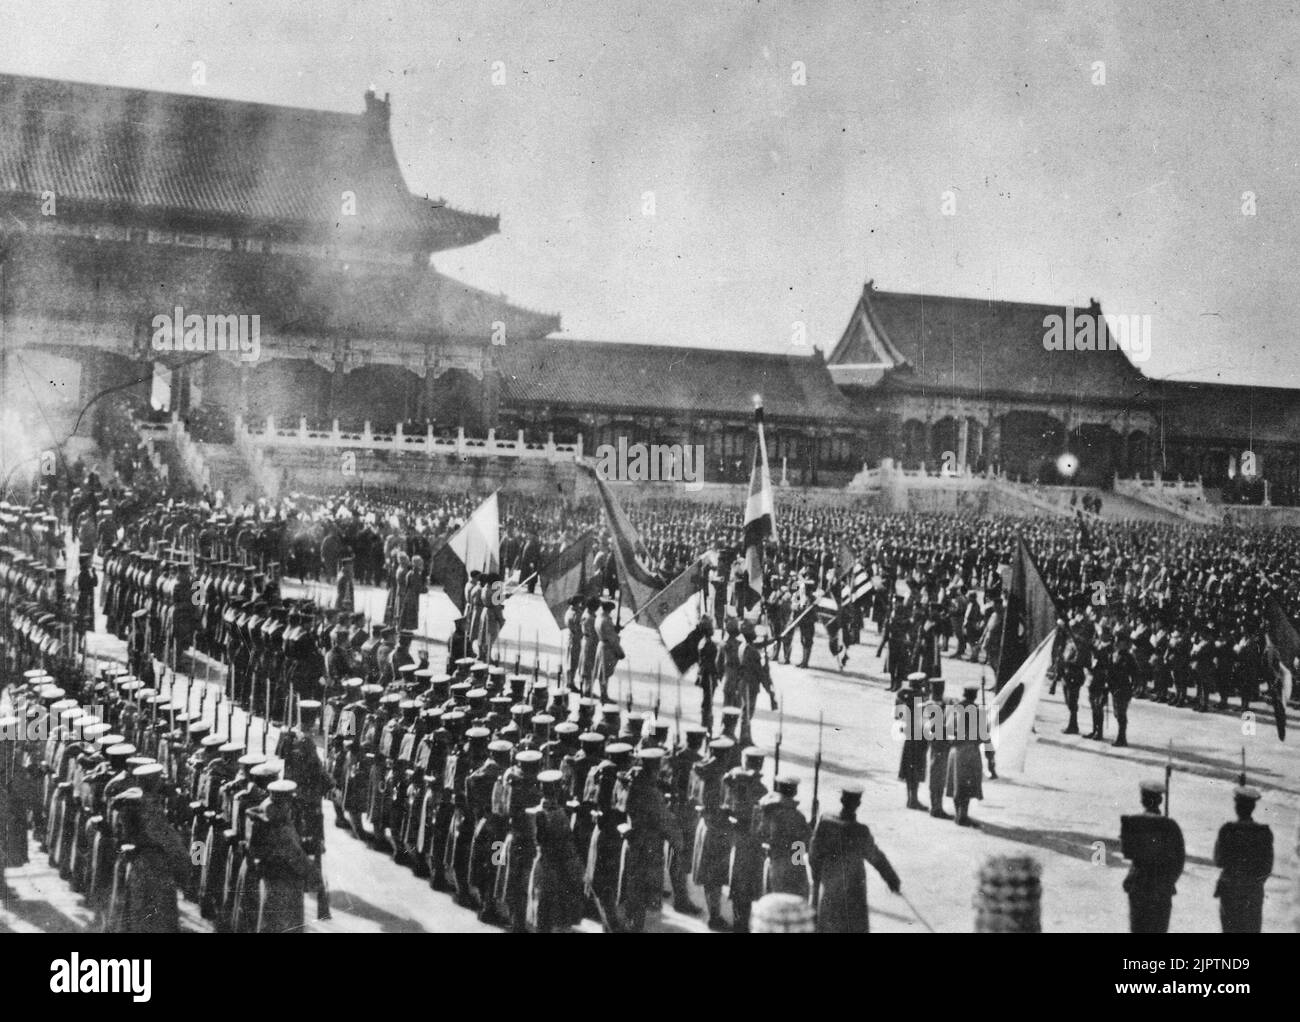 All'interno dei terreni storici della Città Proibita a Pekin, Cina, il 28 novembre ha celebrato la vittoria degli Alleati nella ribellione di Boxer, circa 1900 Foto Stock